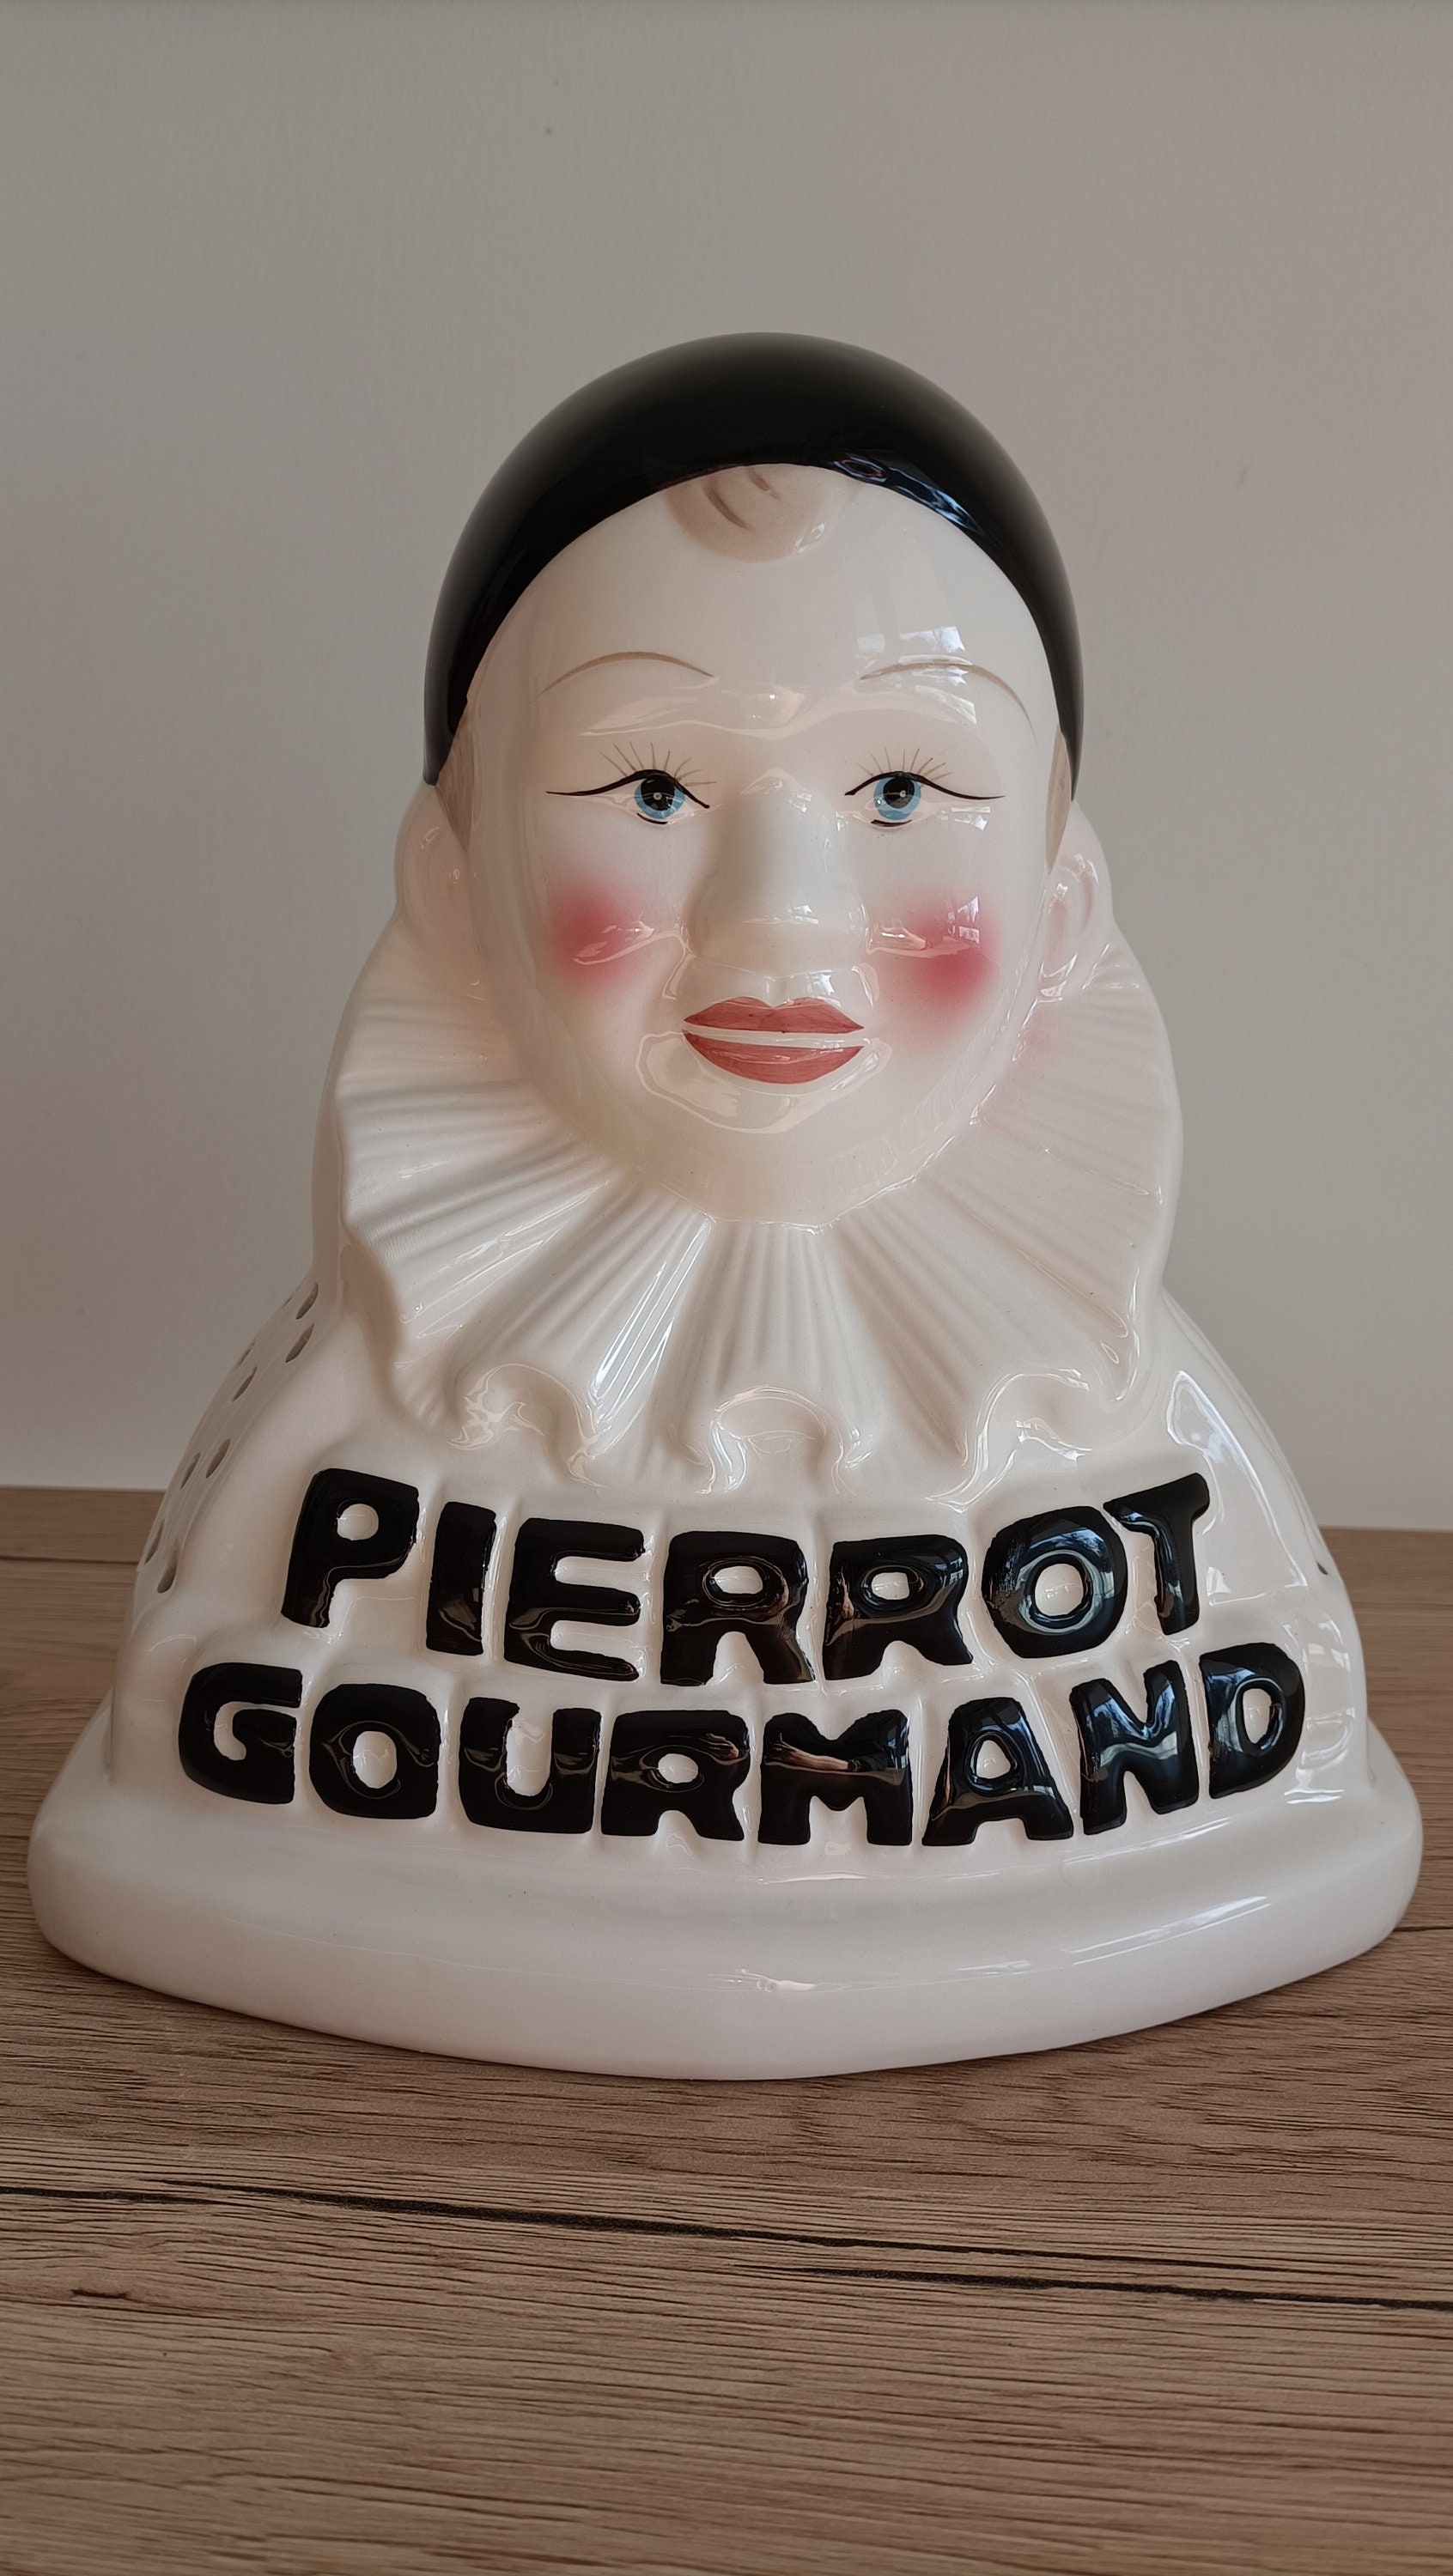 Pierrot Gourmand 